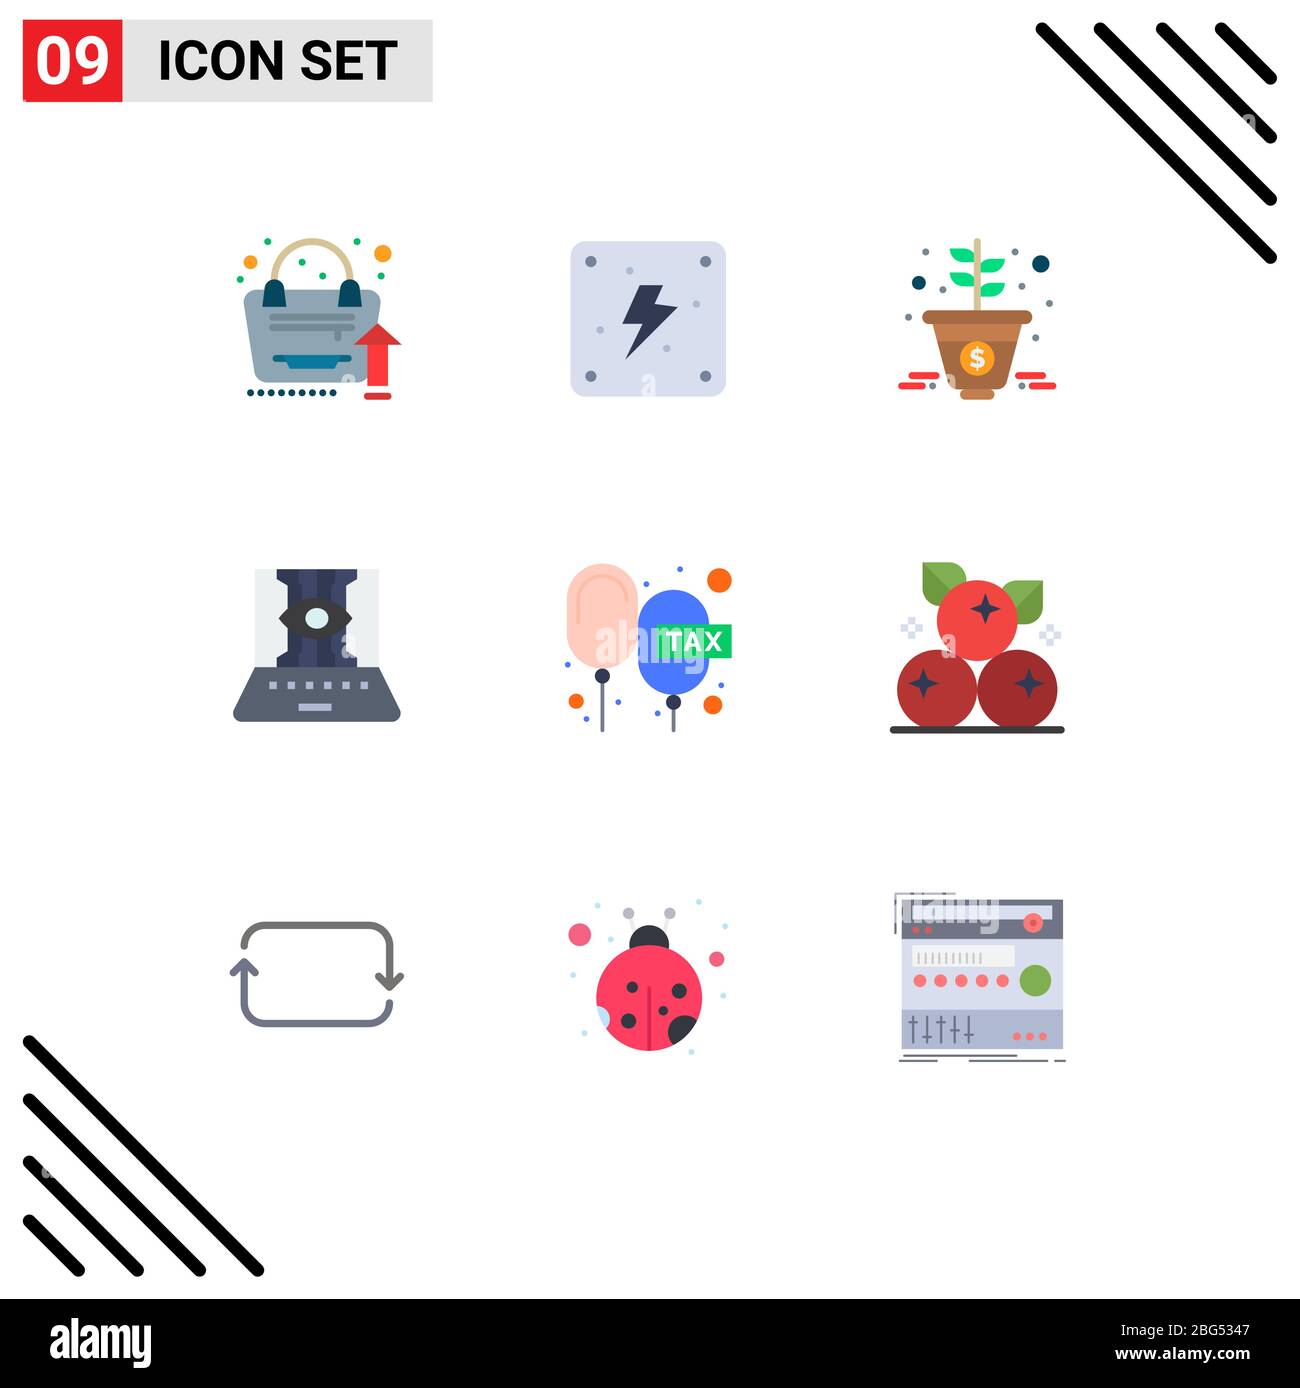 Ensemble de 9 icônes modernes de l'interface utilisateur symboles signes pour les fonctions, la technologie, la croissance, technique, informatique éléments éditables de conception vectorielle Illustration de Vecteur